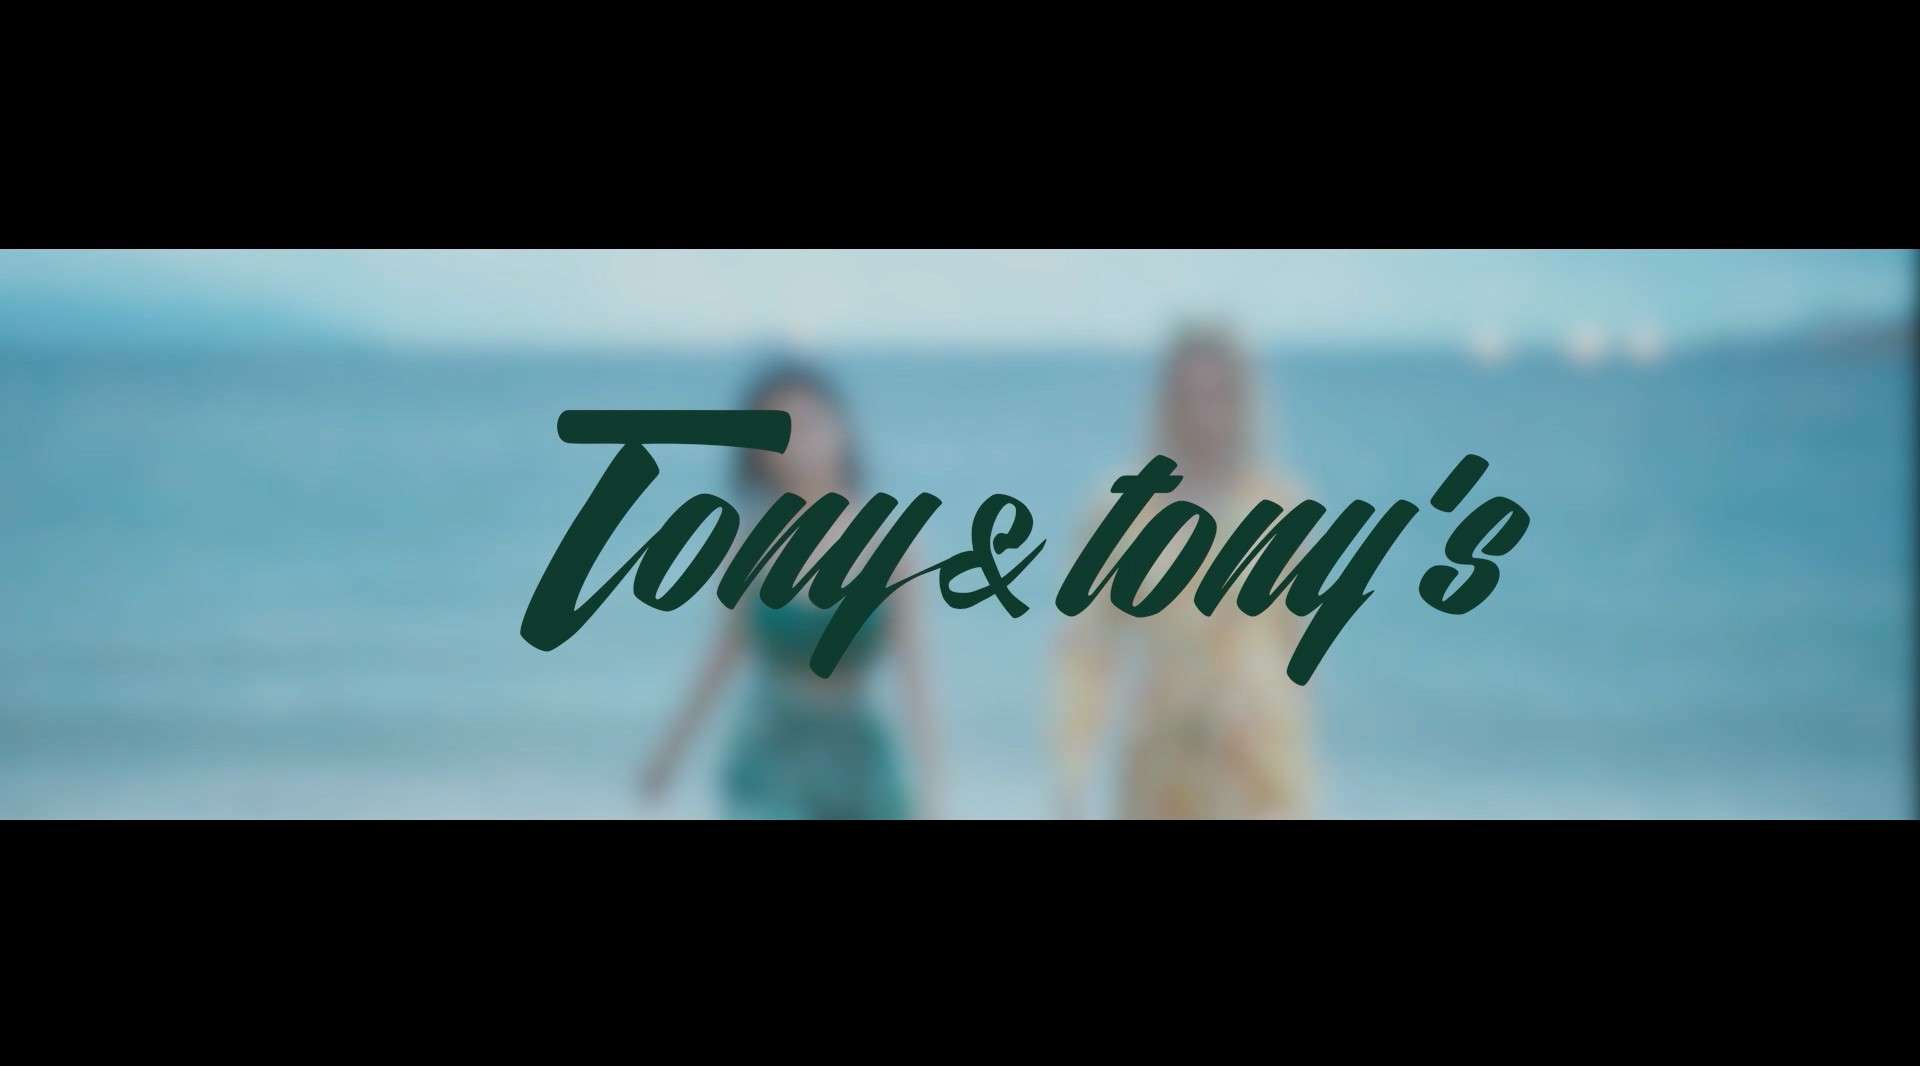 《服装创意广告片》丨tony&tony's-Dir